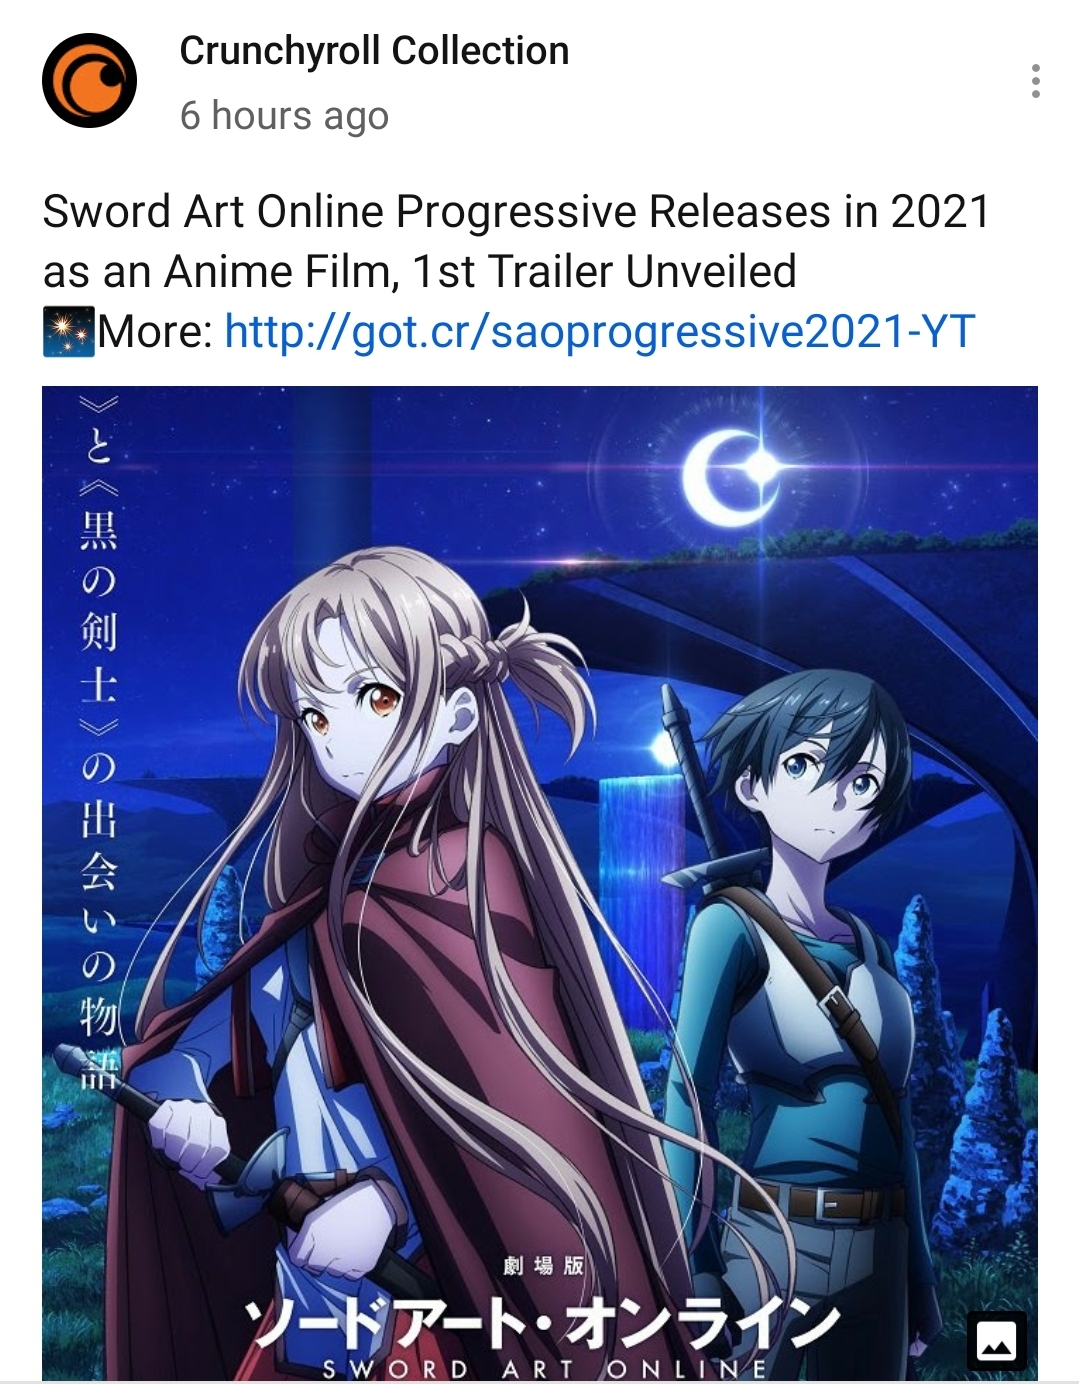 Sword Art Online: Progressive Releases New Trailer